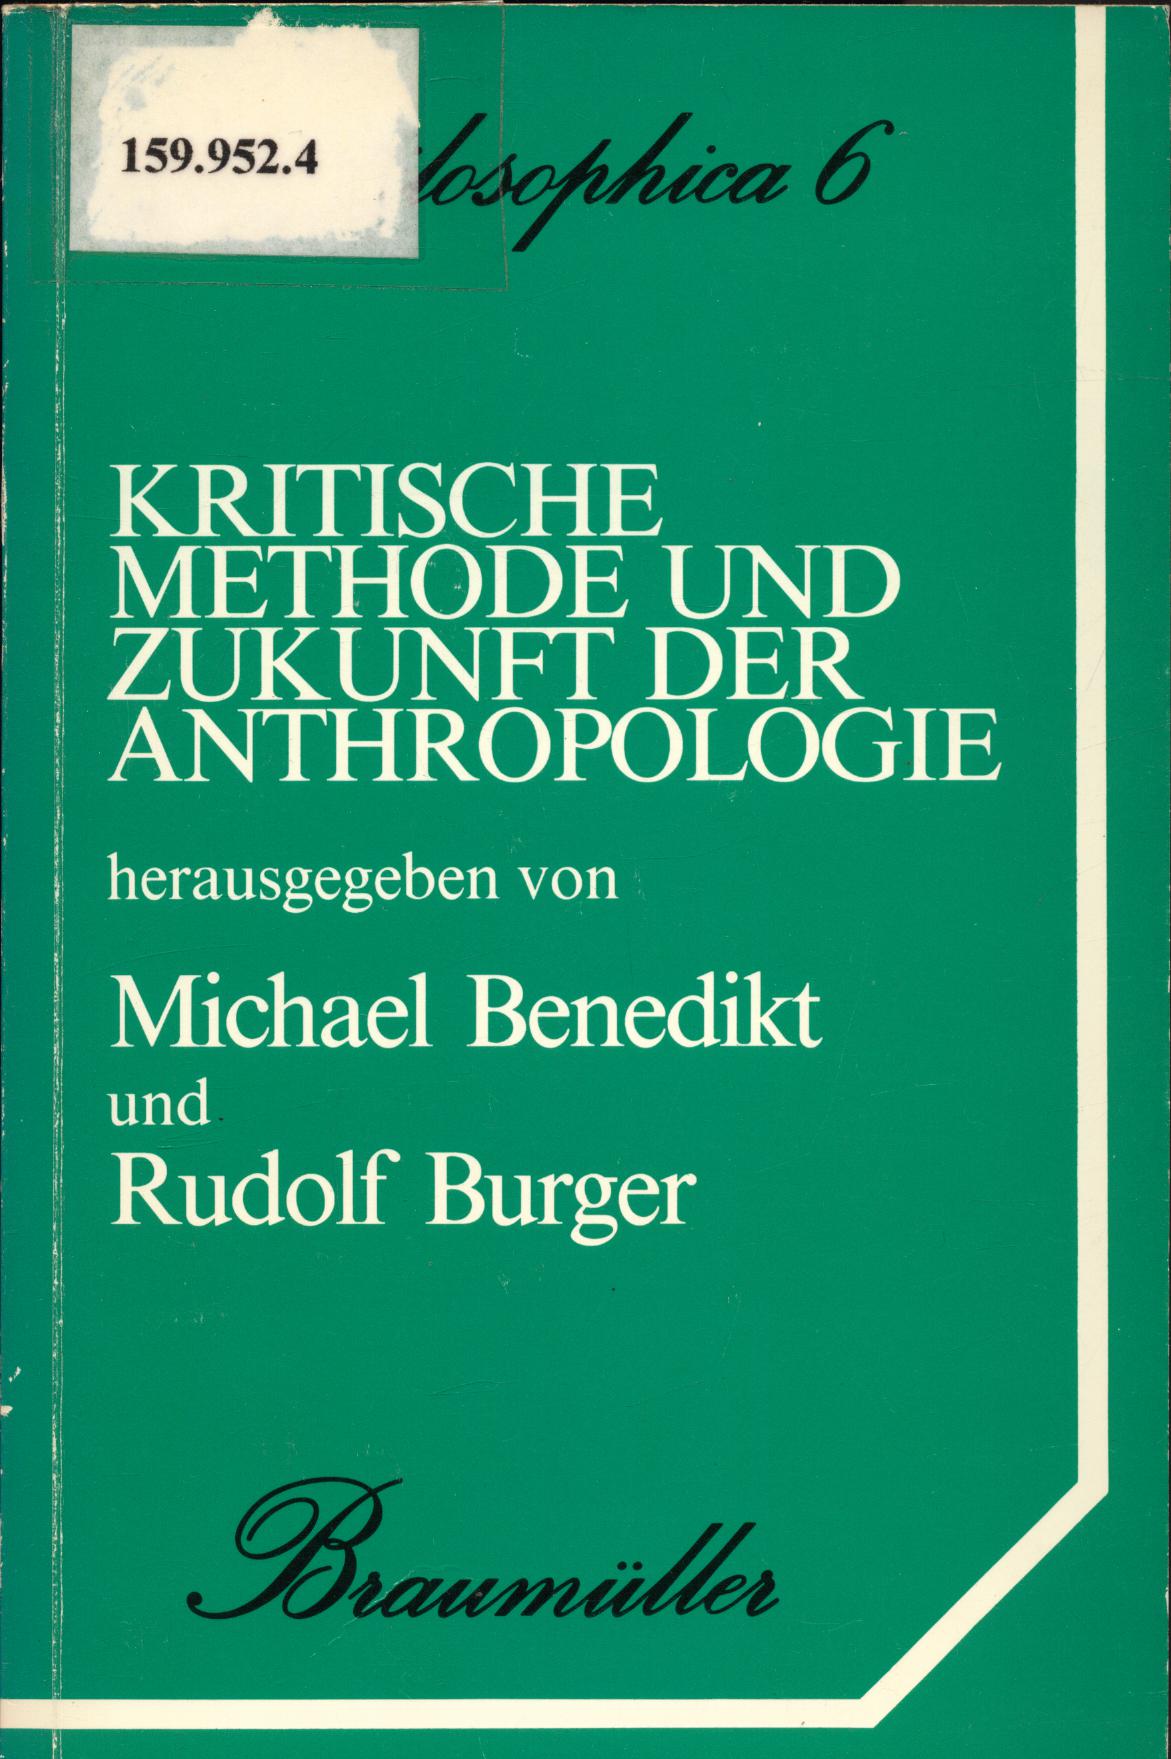 Kritische Methode und Zukunft der Anthropologie - Wallner, Friedrich, Michael Benedikt und Rudolf Burger